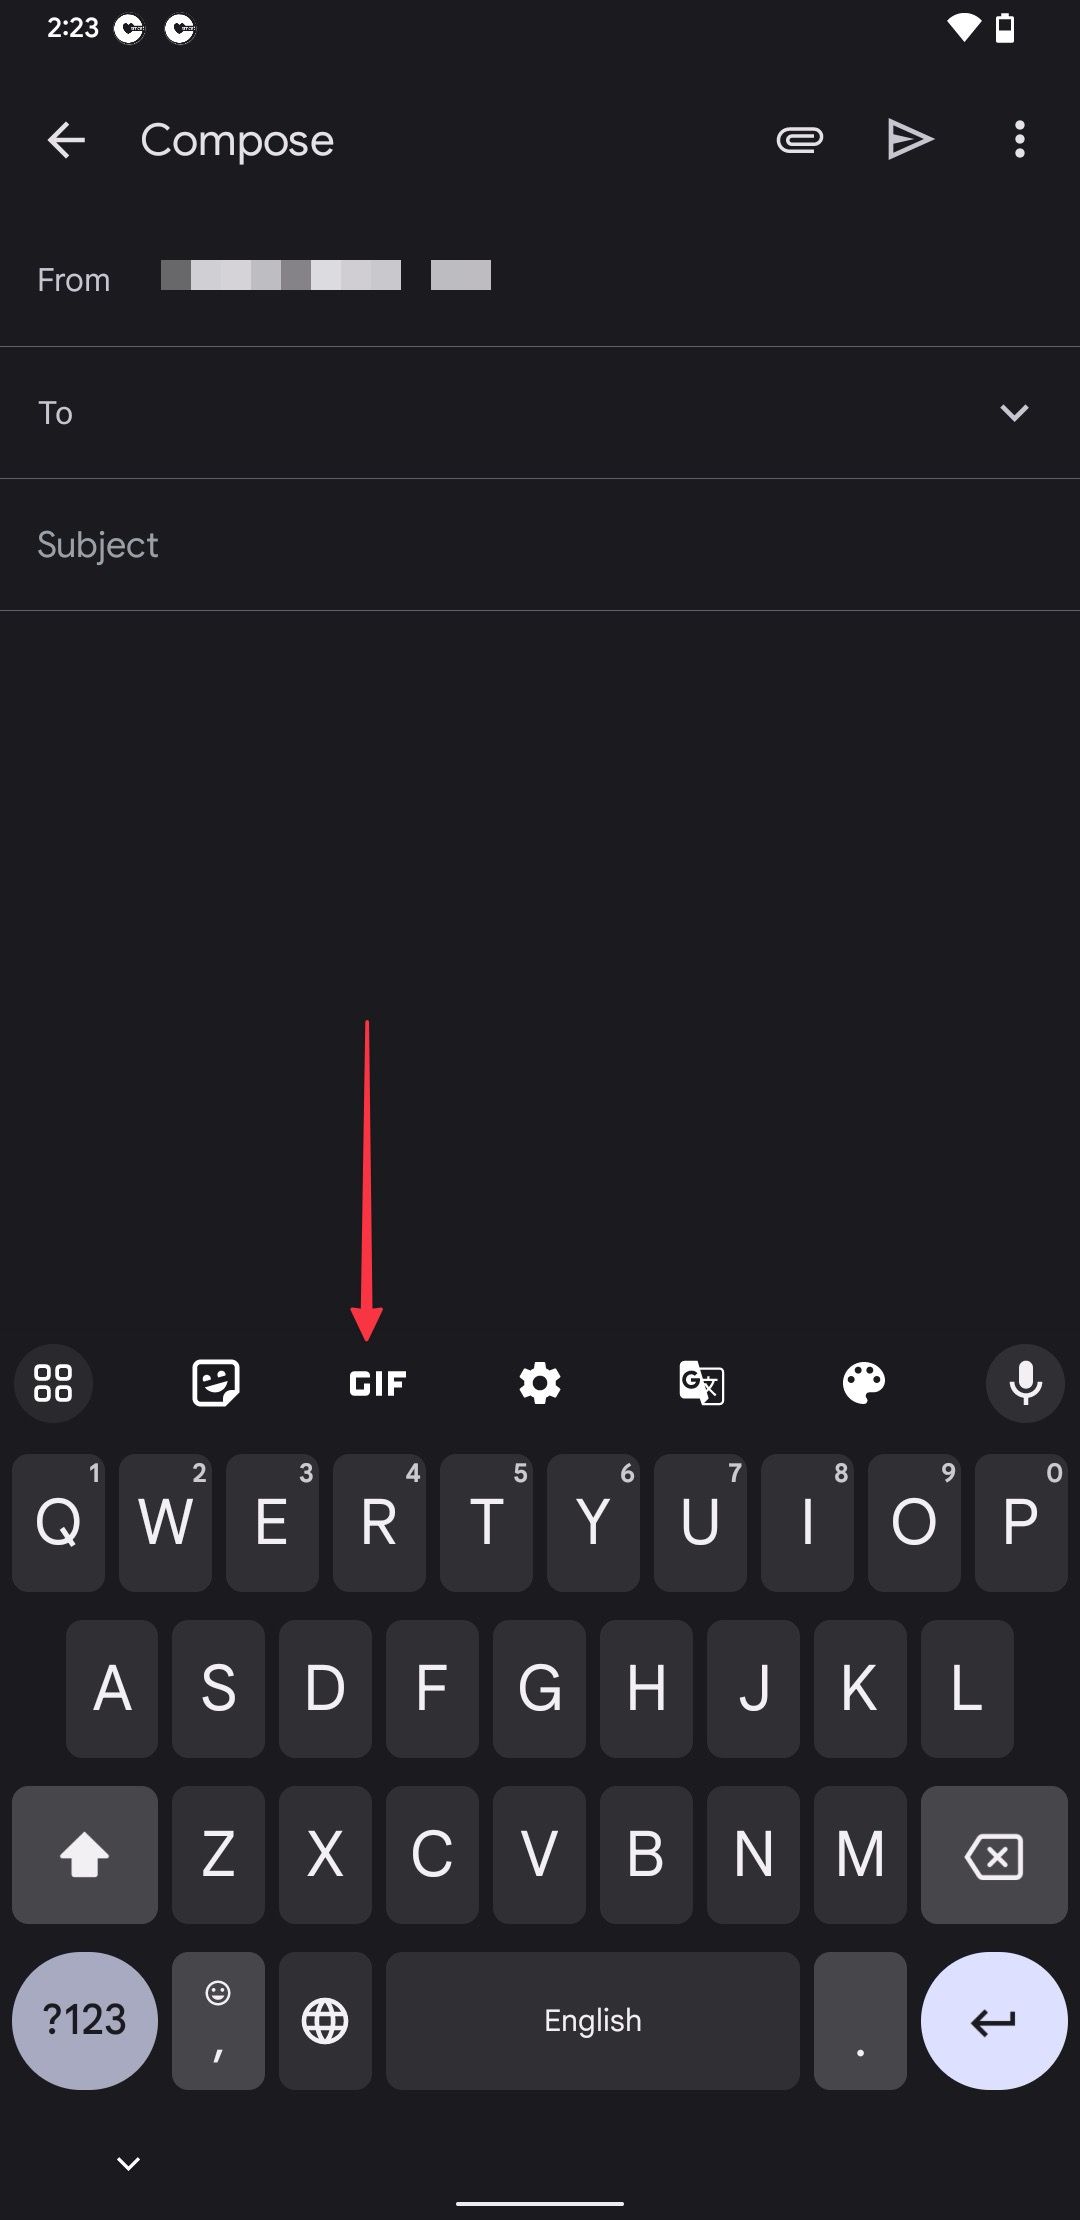 Aplicativo Gboard mostrando botão GIF no Gmail